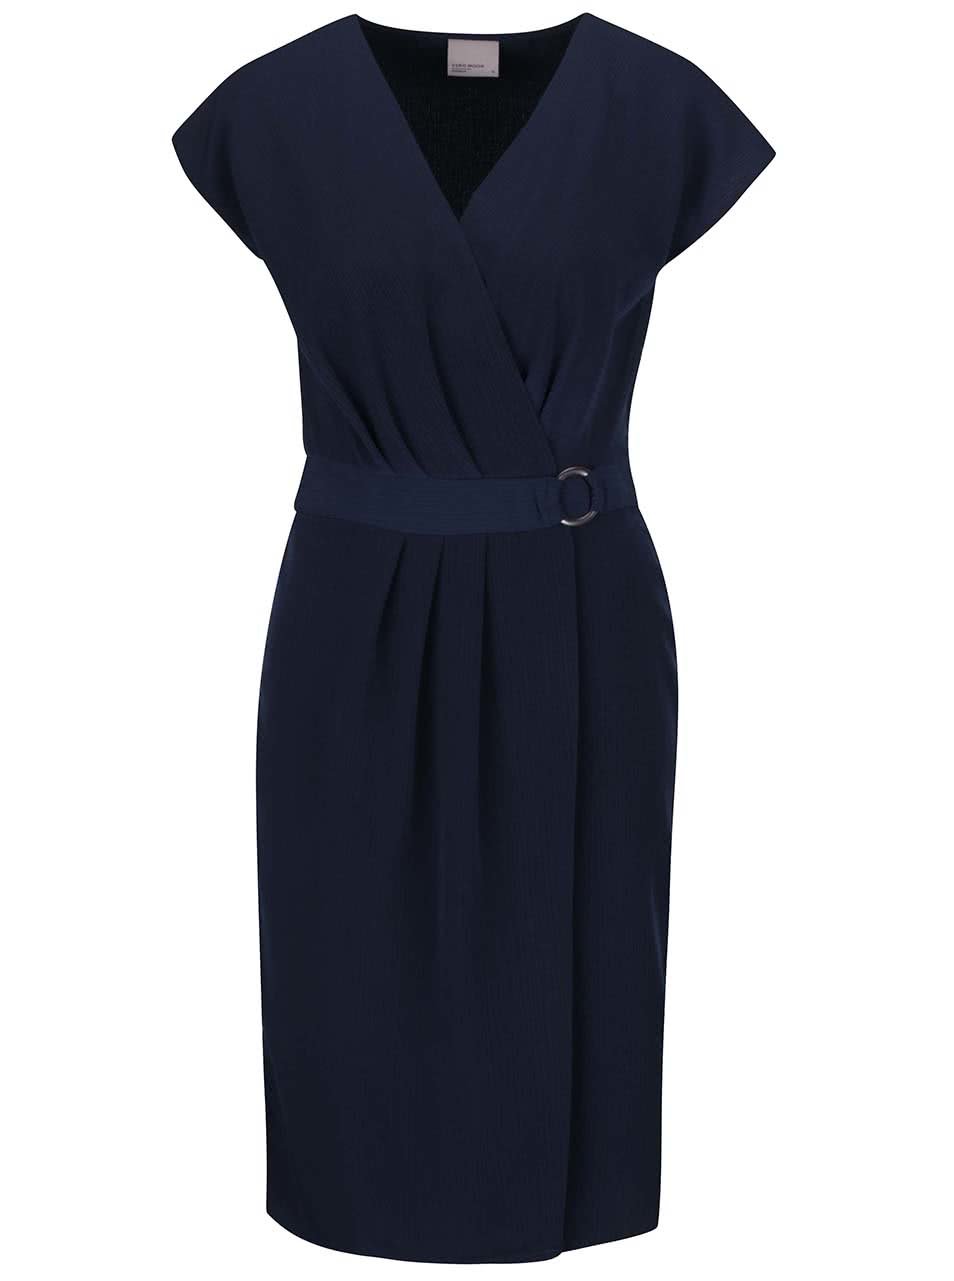 Tmavě modré šaty s překládaným výstřihem a sukní Vero Moda Moline